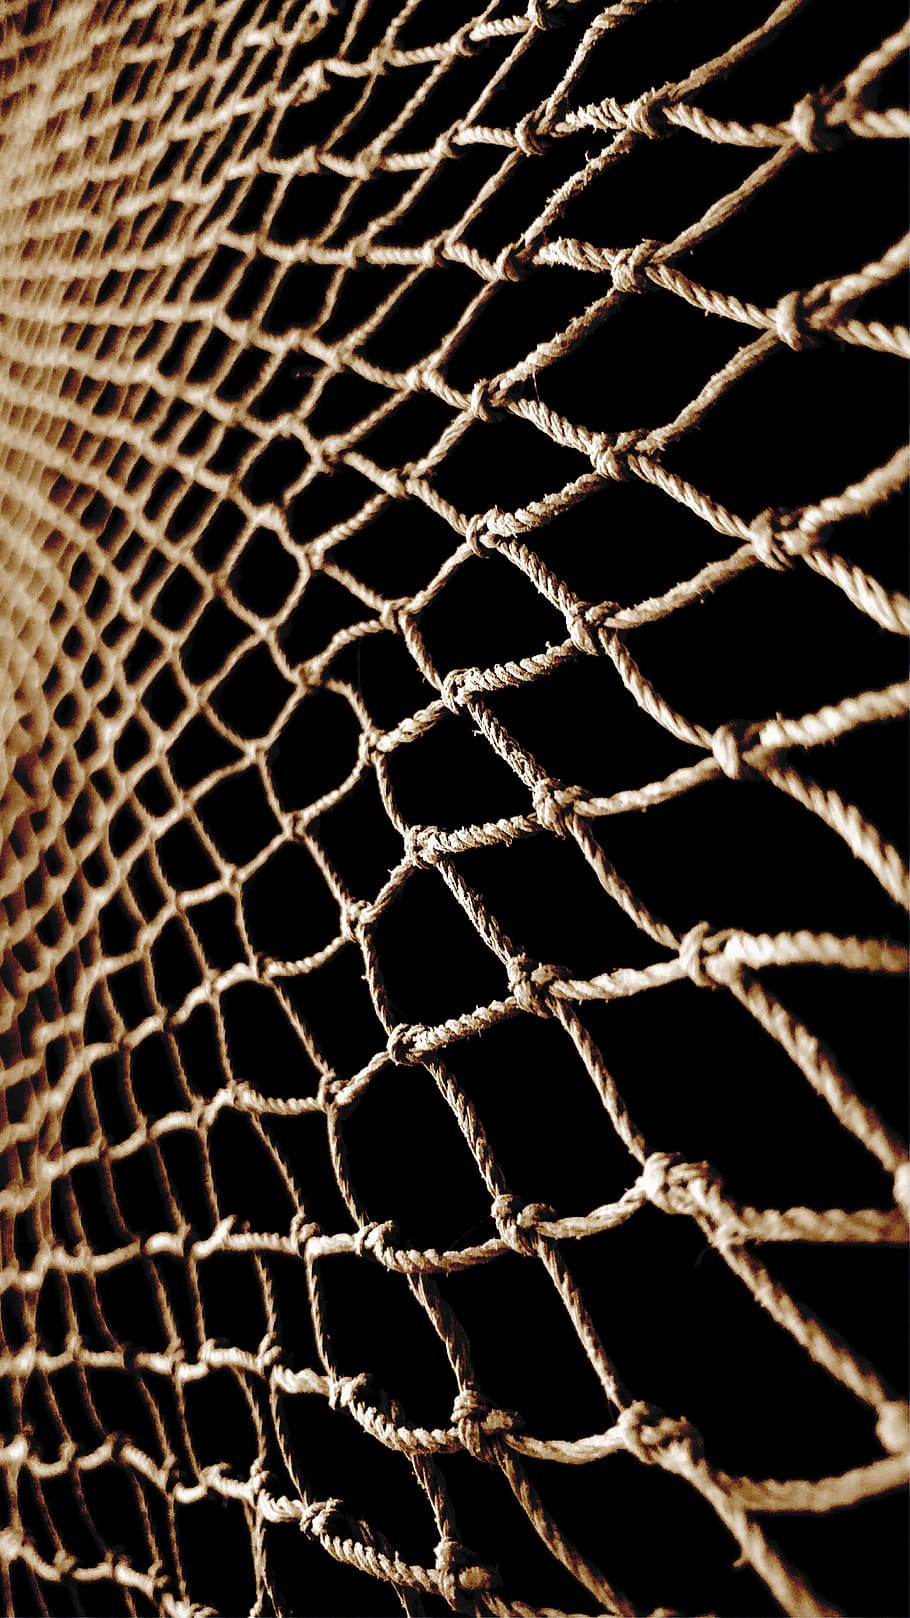 HD wallpaper: net, fishnet, fishing-net, dark, tool, pattern, full frame